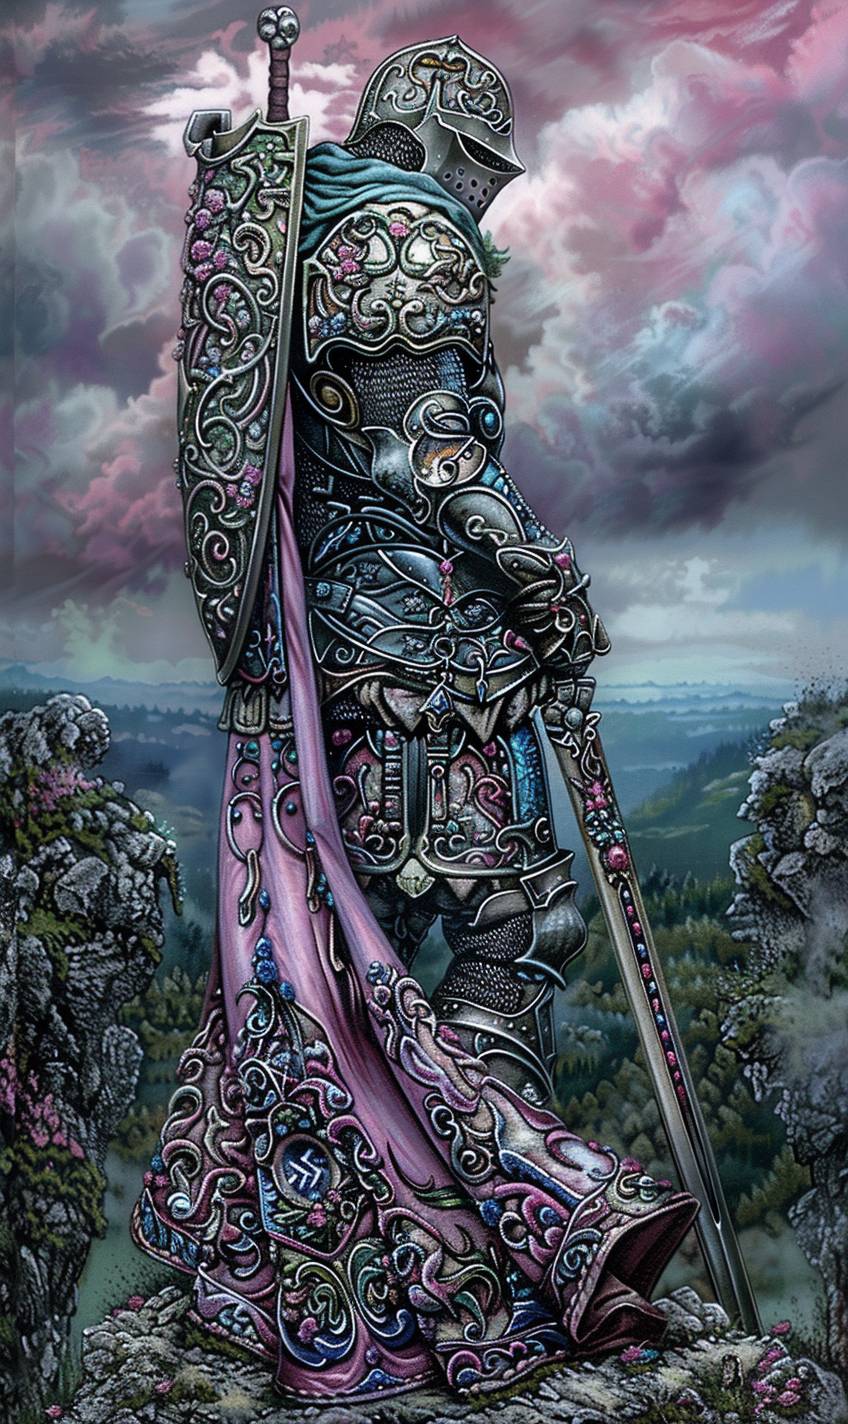 輝く鎧を身にまとった勇敢な騎士が、壮大な戦場を一望する丘の上に立っている。劇的な夕日が長い影を落としている